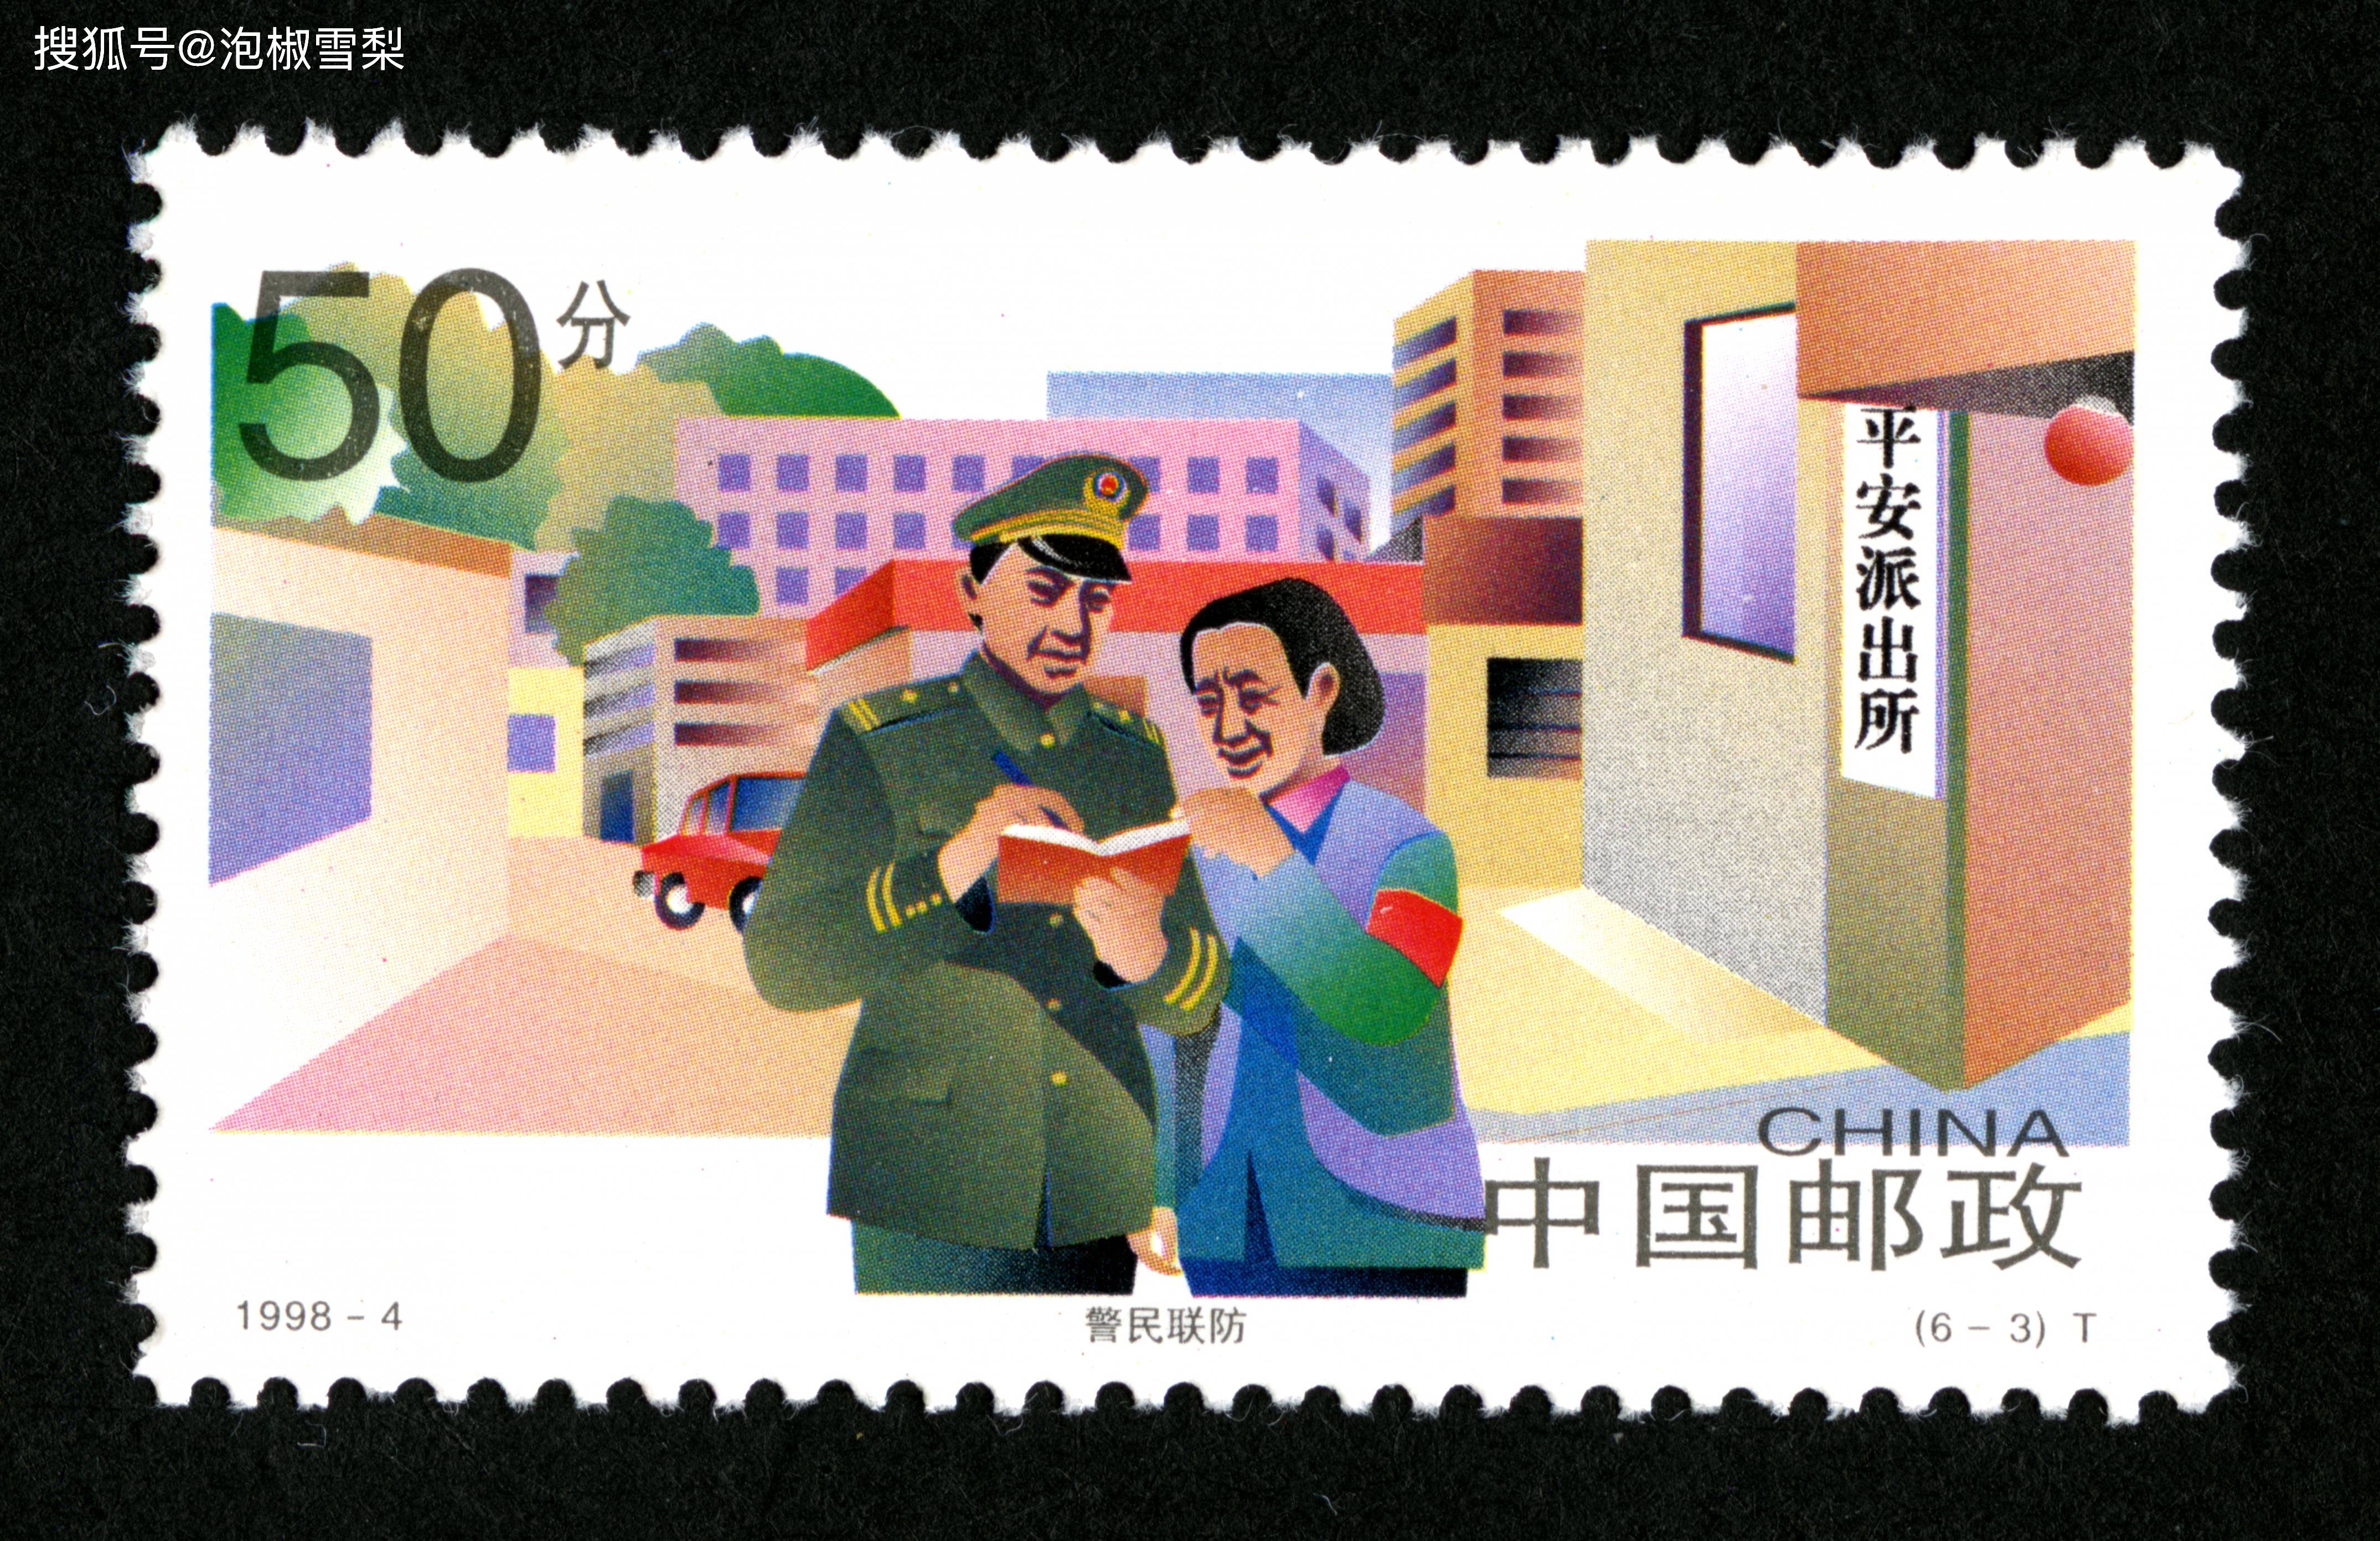 1套6枚的邮票,出现了7个错误,中国错误最多的1套邮票